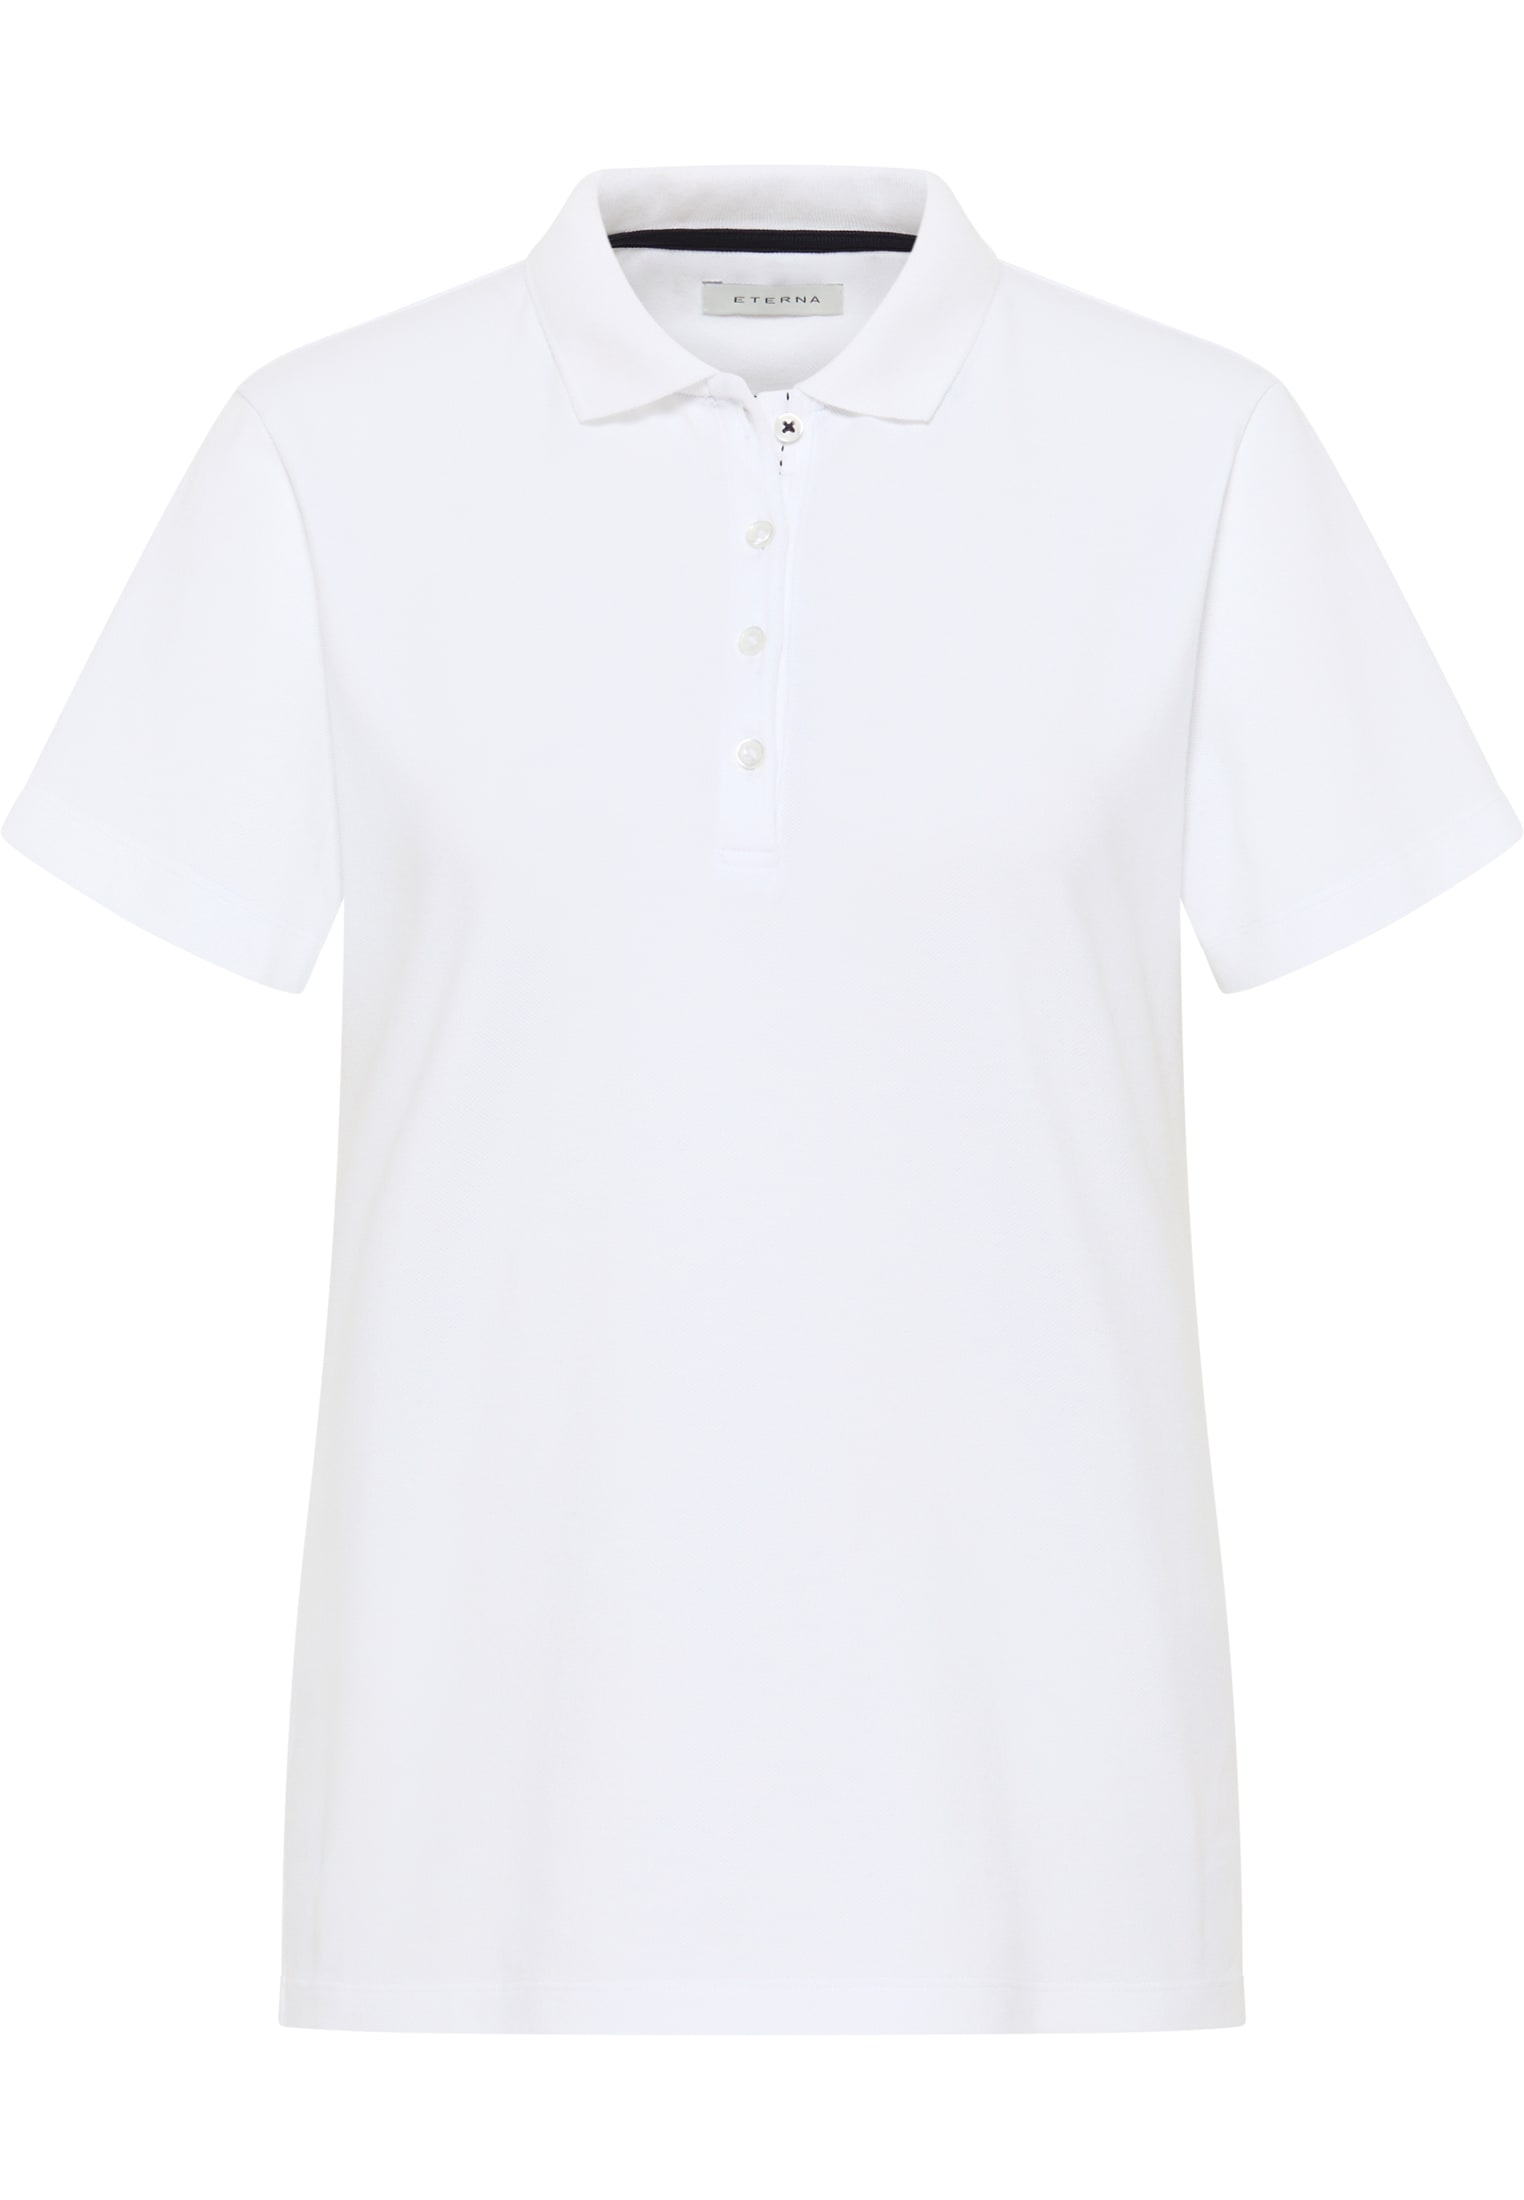 Poloshirt in weiß 2SP00020-00-01-42-1/2 weiß | 42 | unifarben | | Kurzarm